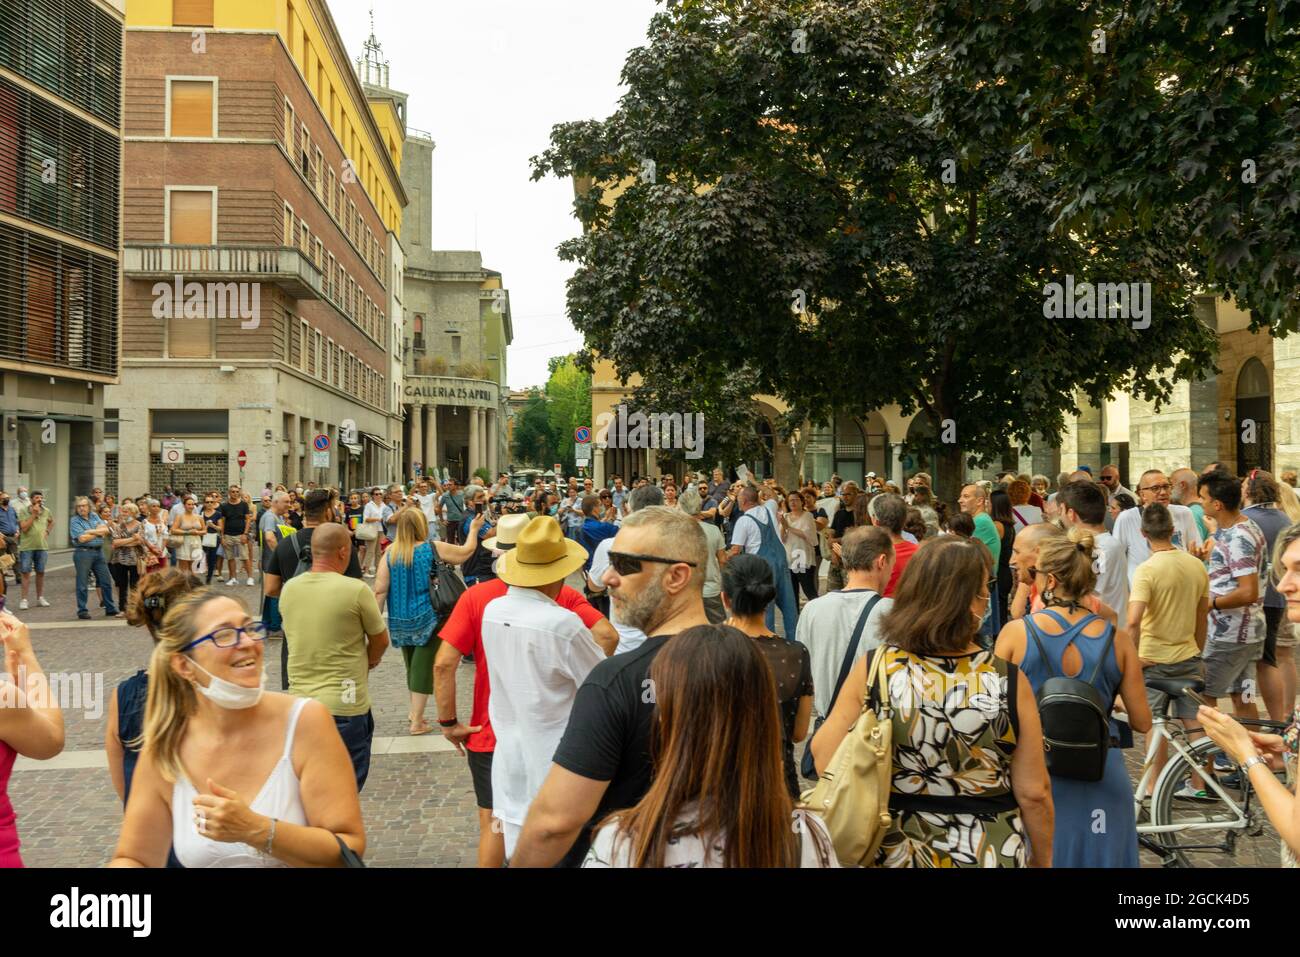 CREMONA, ITALIE - 24 juillet 2021 : une foule de personnes protestant contre le vaccin COVID-19 à Cremona, Italie Banque D'Images